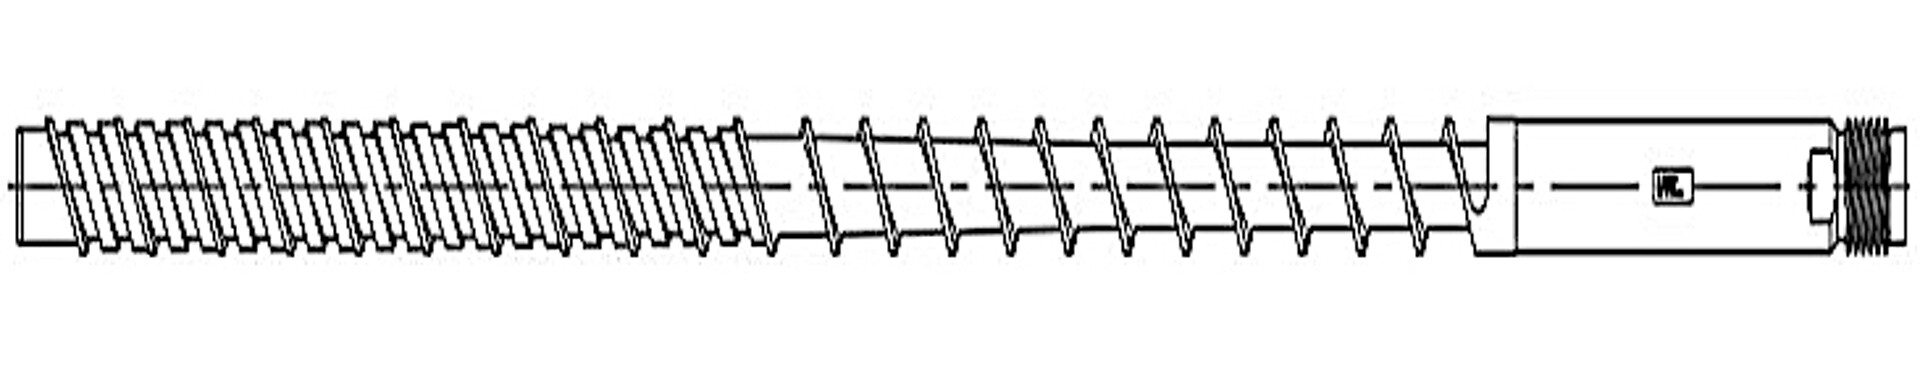 Das Hauptmerkmal der Maxi Melt-Extreme-Schnecke ist der 8- bis 10D lange Mischer mit um jeweils um 90° versetzten elliptischen Mischelementen. (Abb.: Maxi Melt)